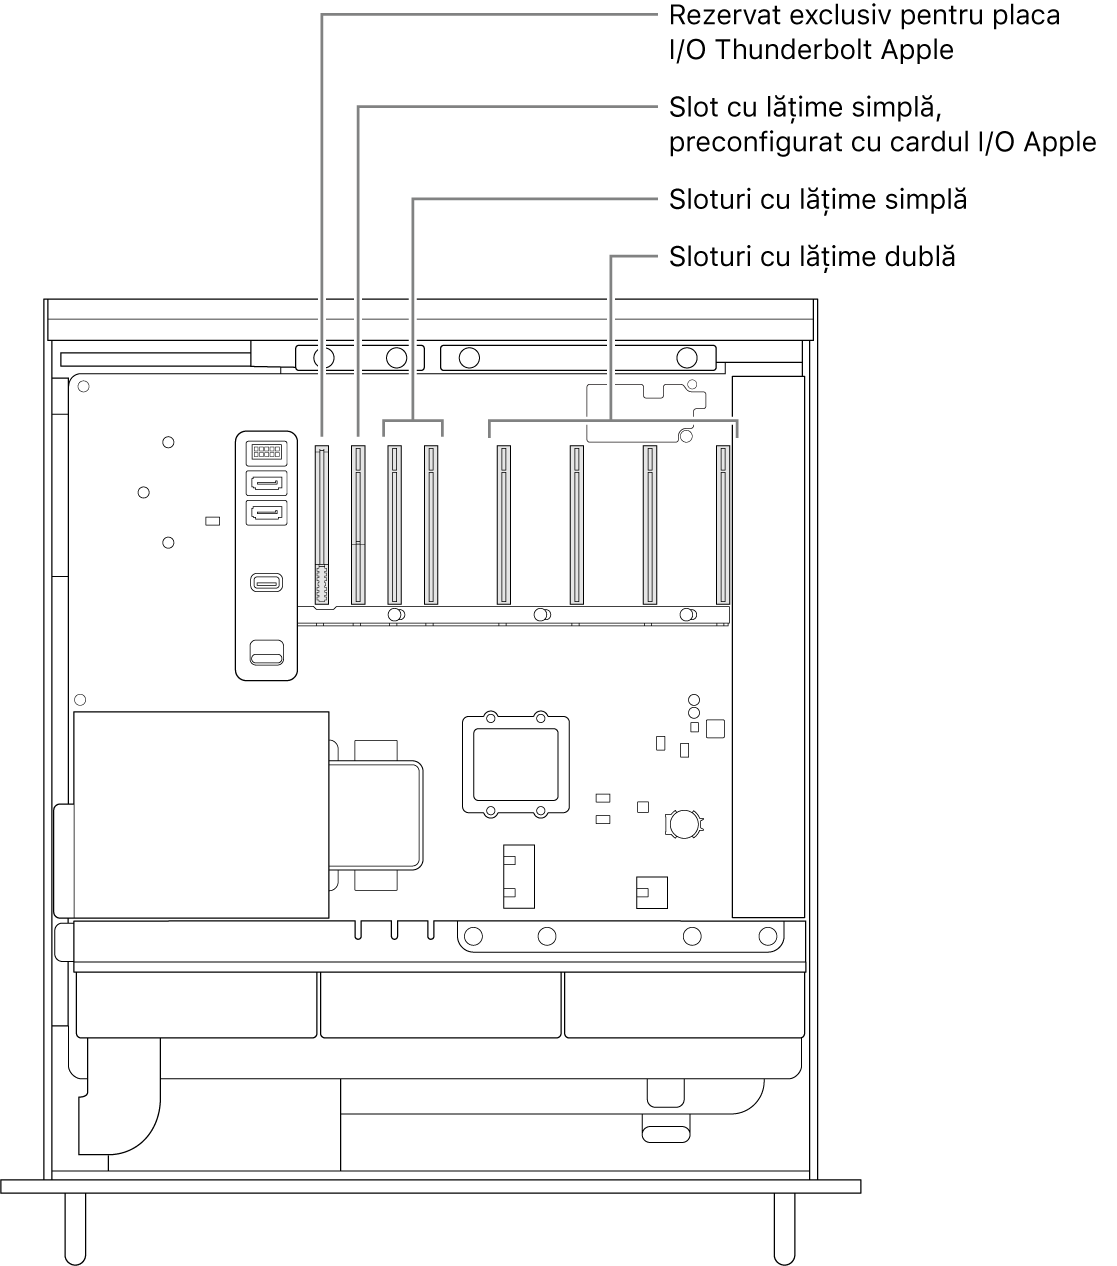 Partea laterală a Mac Pro-ului deschisă, cu explicații care indică locul unde se află slotul pentru placa Thunderbolt I/O, slotul de lățime simplă pentru placa Apple I/O, două sloturi de lățime simplă și patru sloturi de lățime dublă.